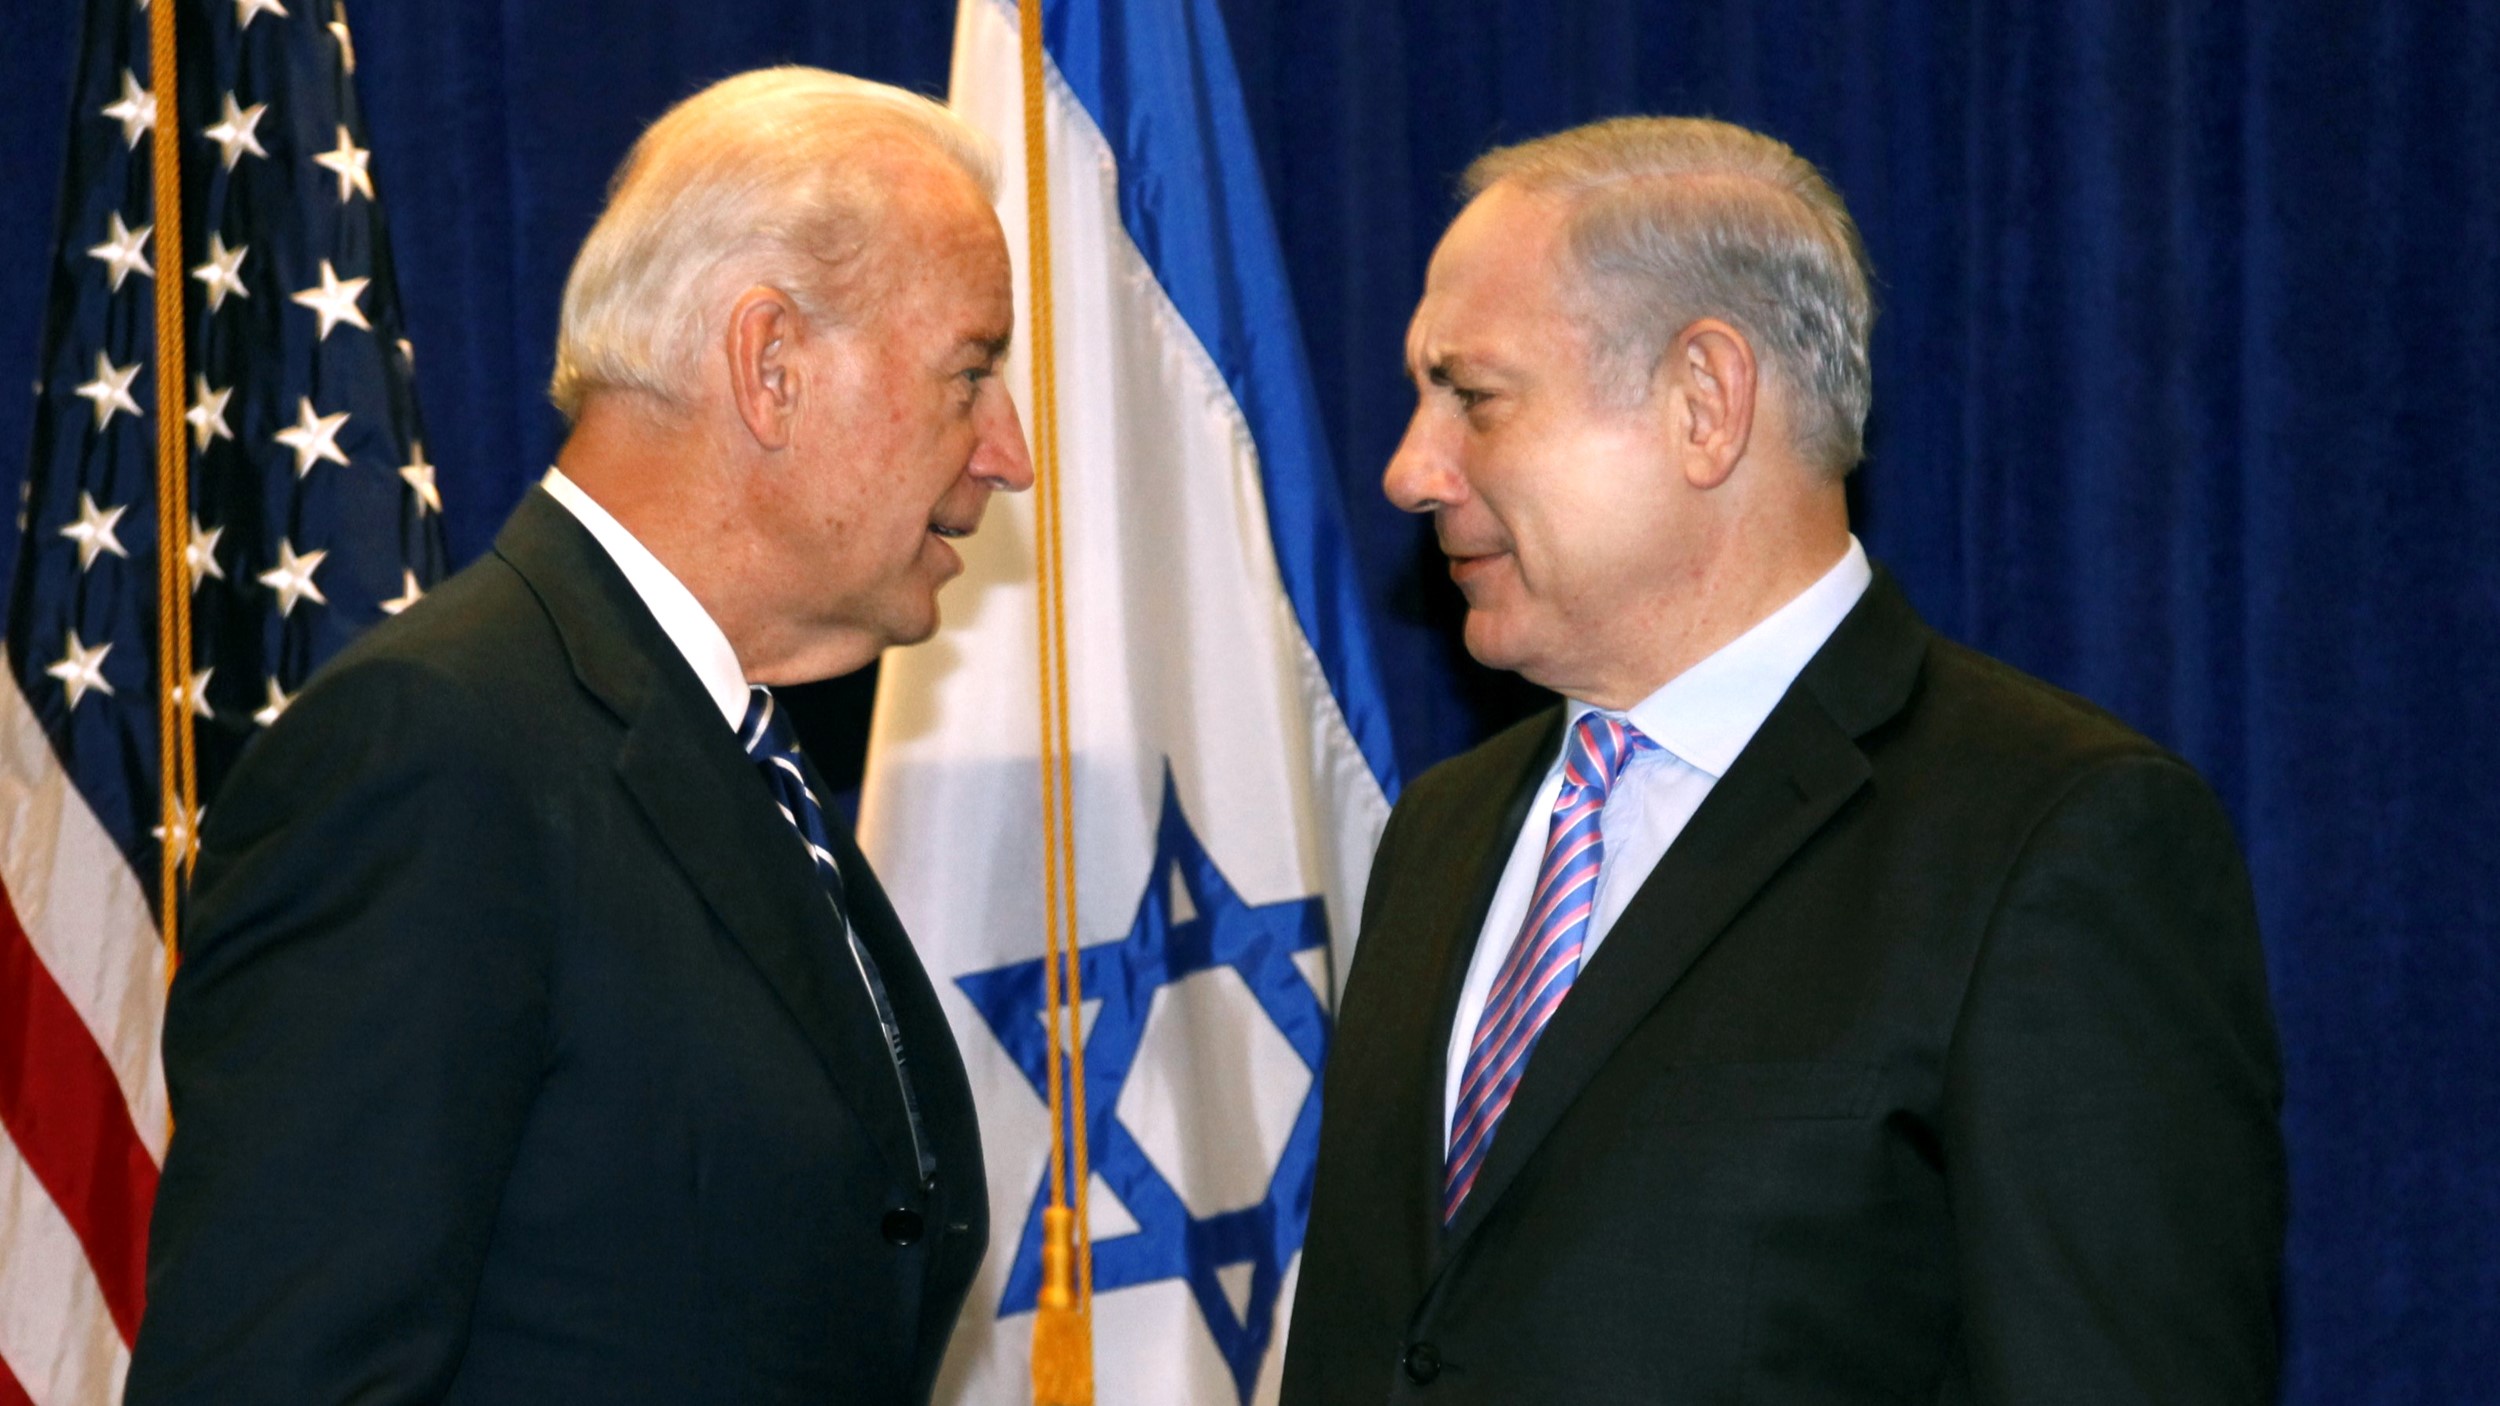 L’administration Biden veut renverser le gouvernement Netanyahu, selon un haut responsable israélien